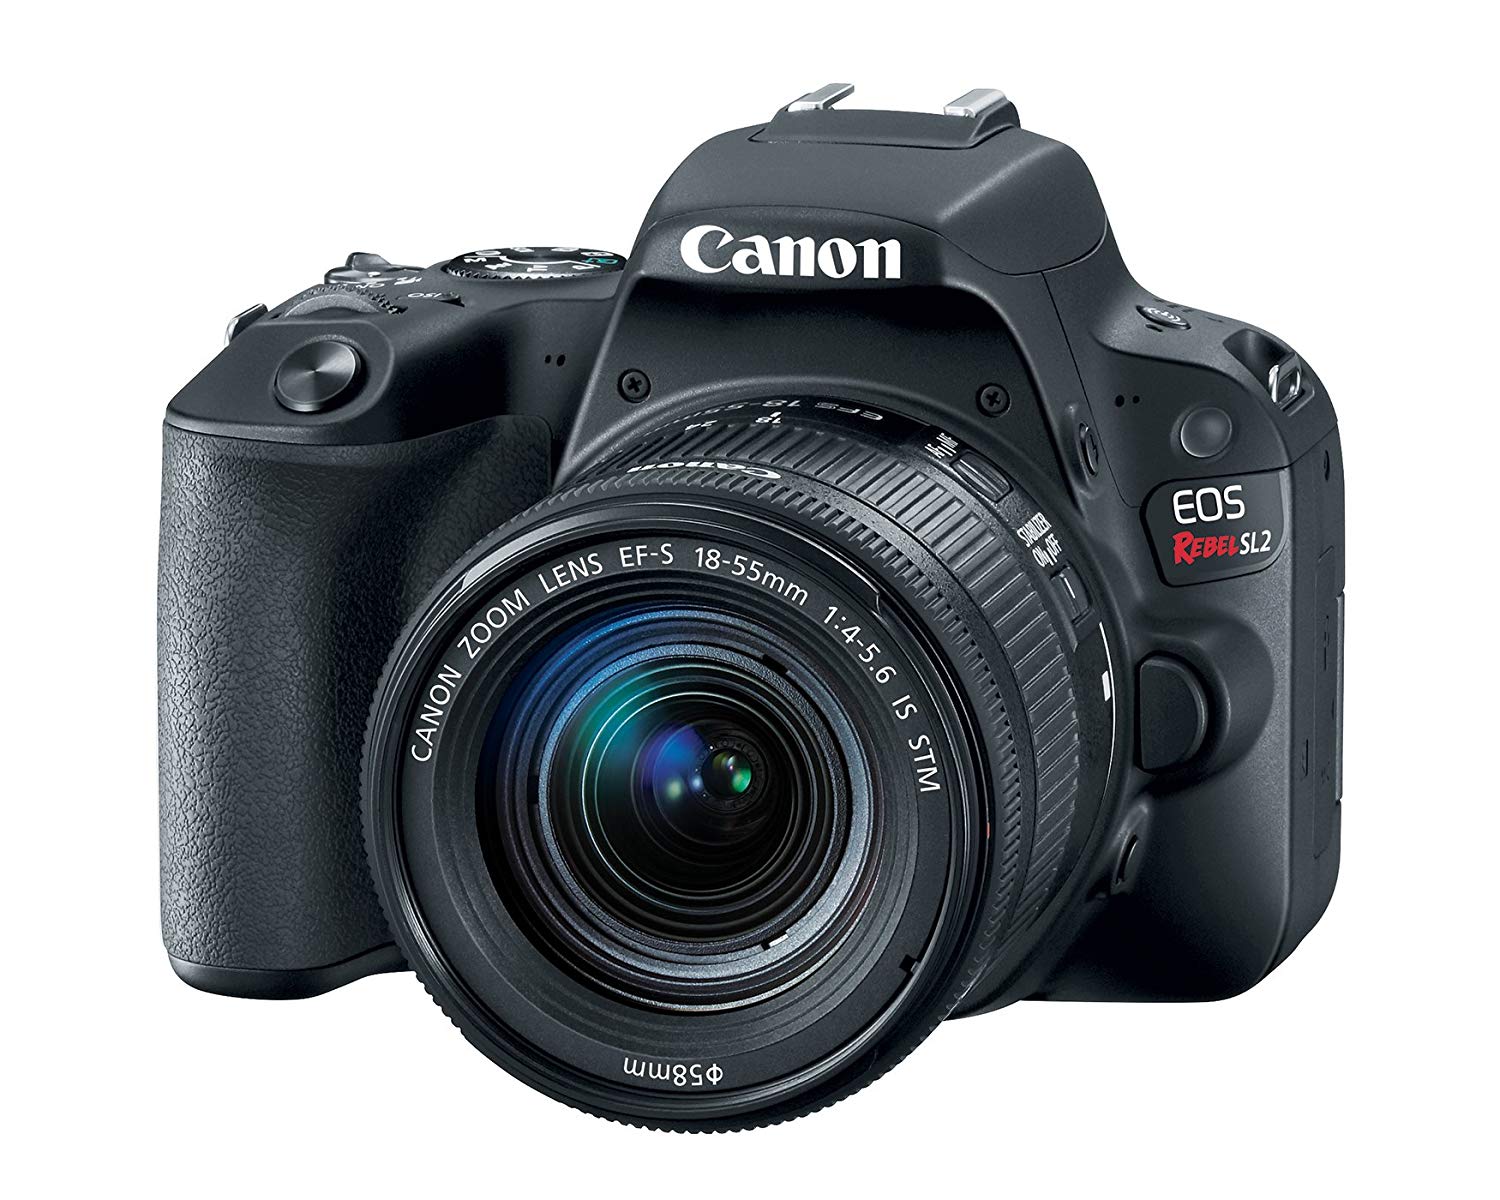  Canon EF-S 18-55 मिमी एसटीएम लेंस के साथ ईओएस विद्रोही एसएल 2 डीएसएलआर कैमरा - वाईफाई स...